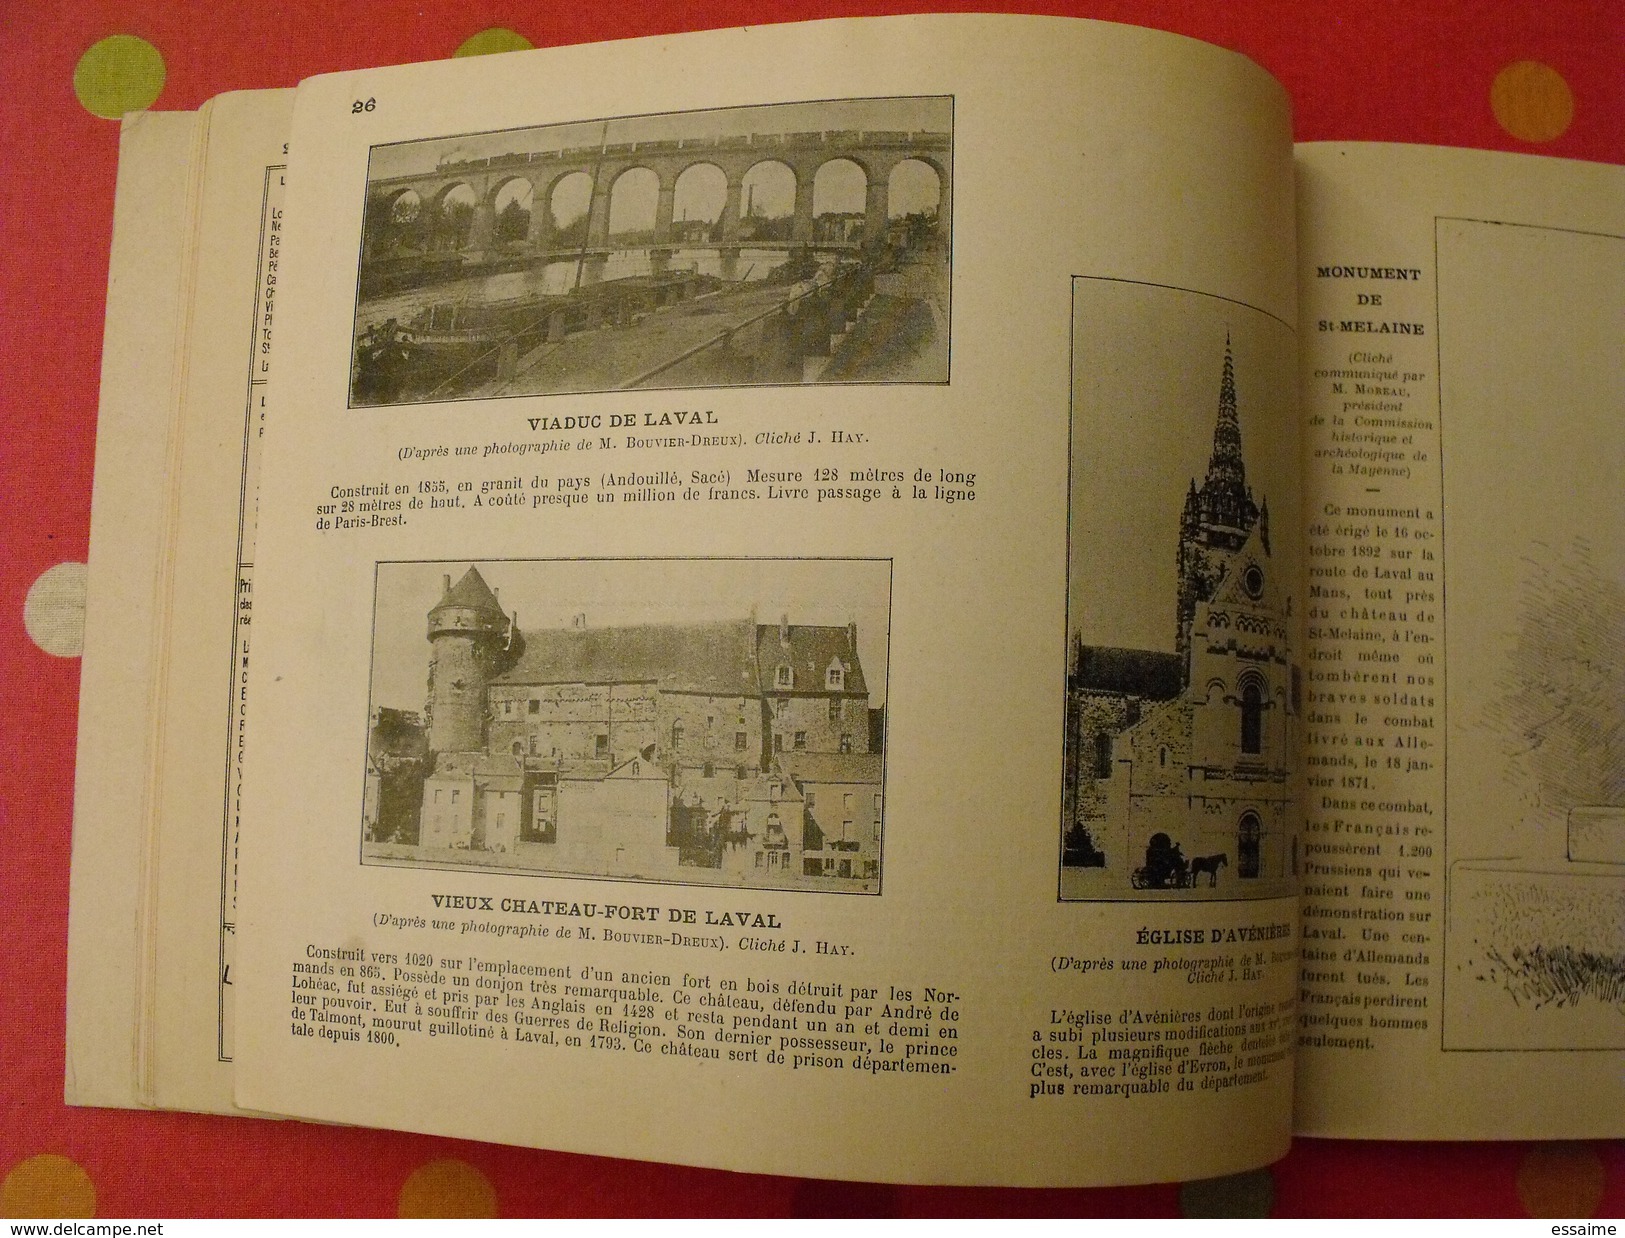 petite géographie du département de la Mayenne. Julien Hay. 1901. 20 cartes + 25 gravures.